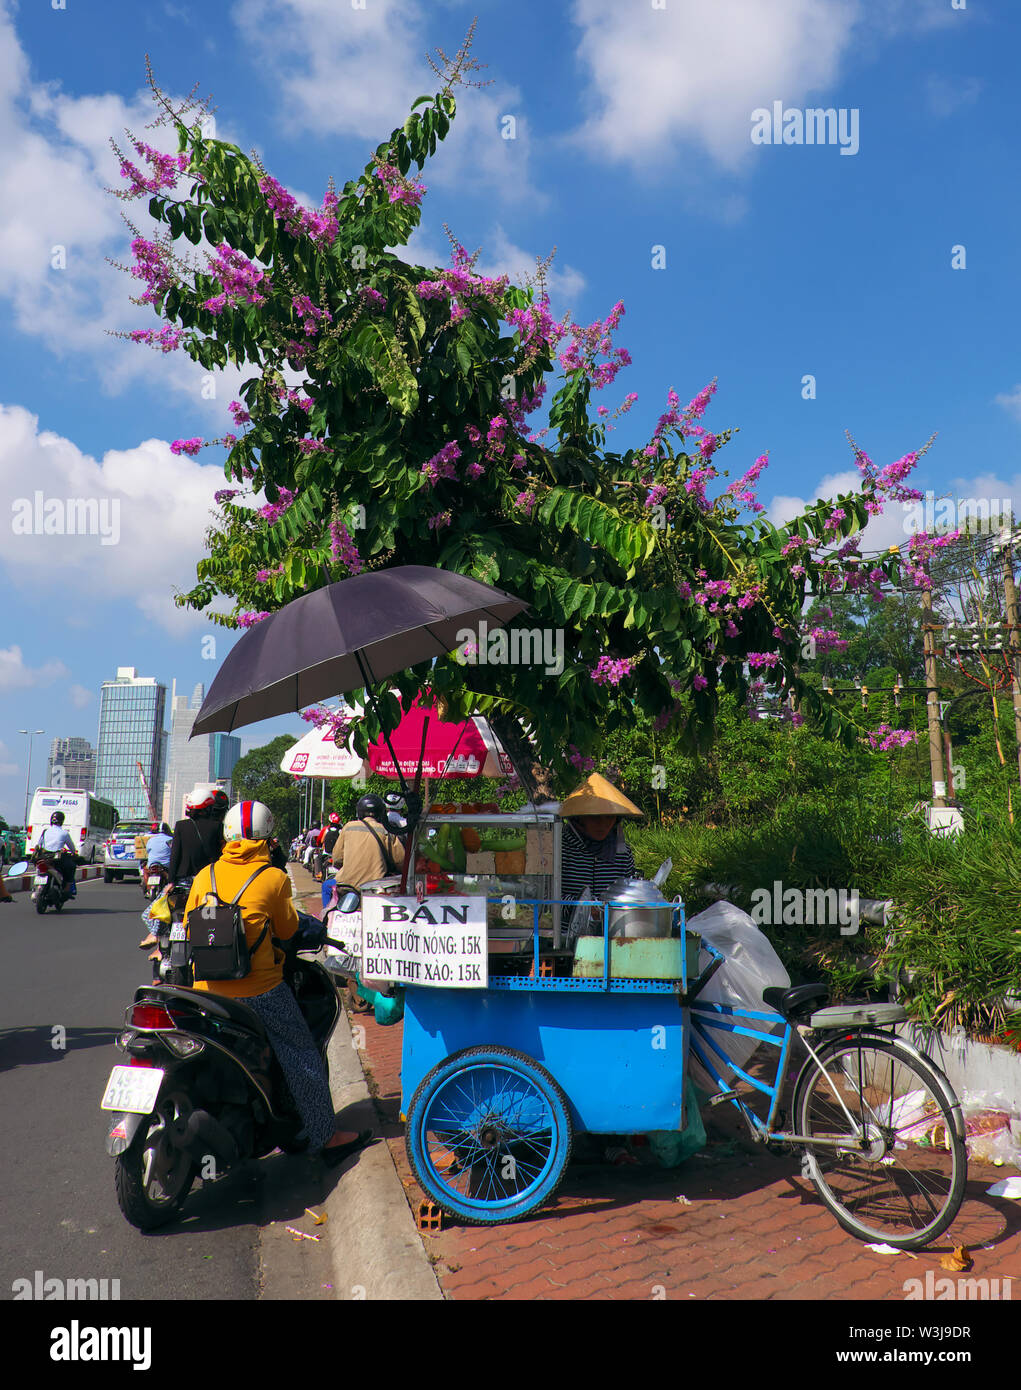 Vendeur de rue vendre petit-déjeuner sur la chaussée au panier alimentaire bleu, mobile fast food en vertu de l'arbre fleur violette et bleu ciel au matin, Vietnam Banque D'Images